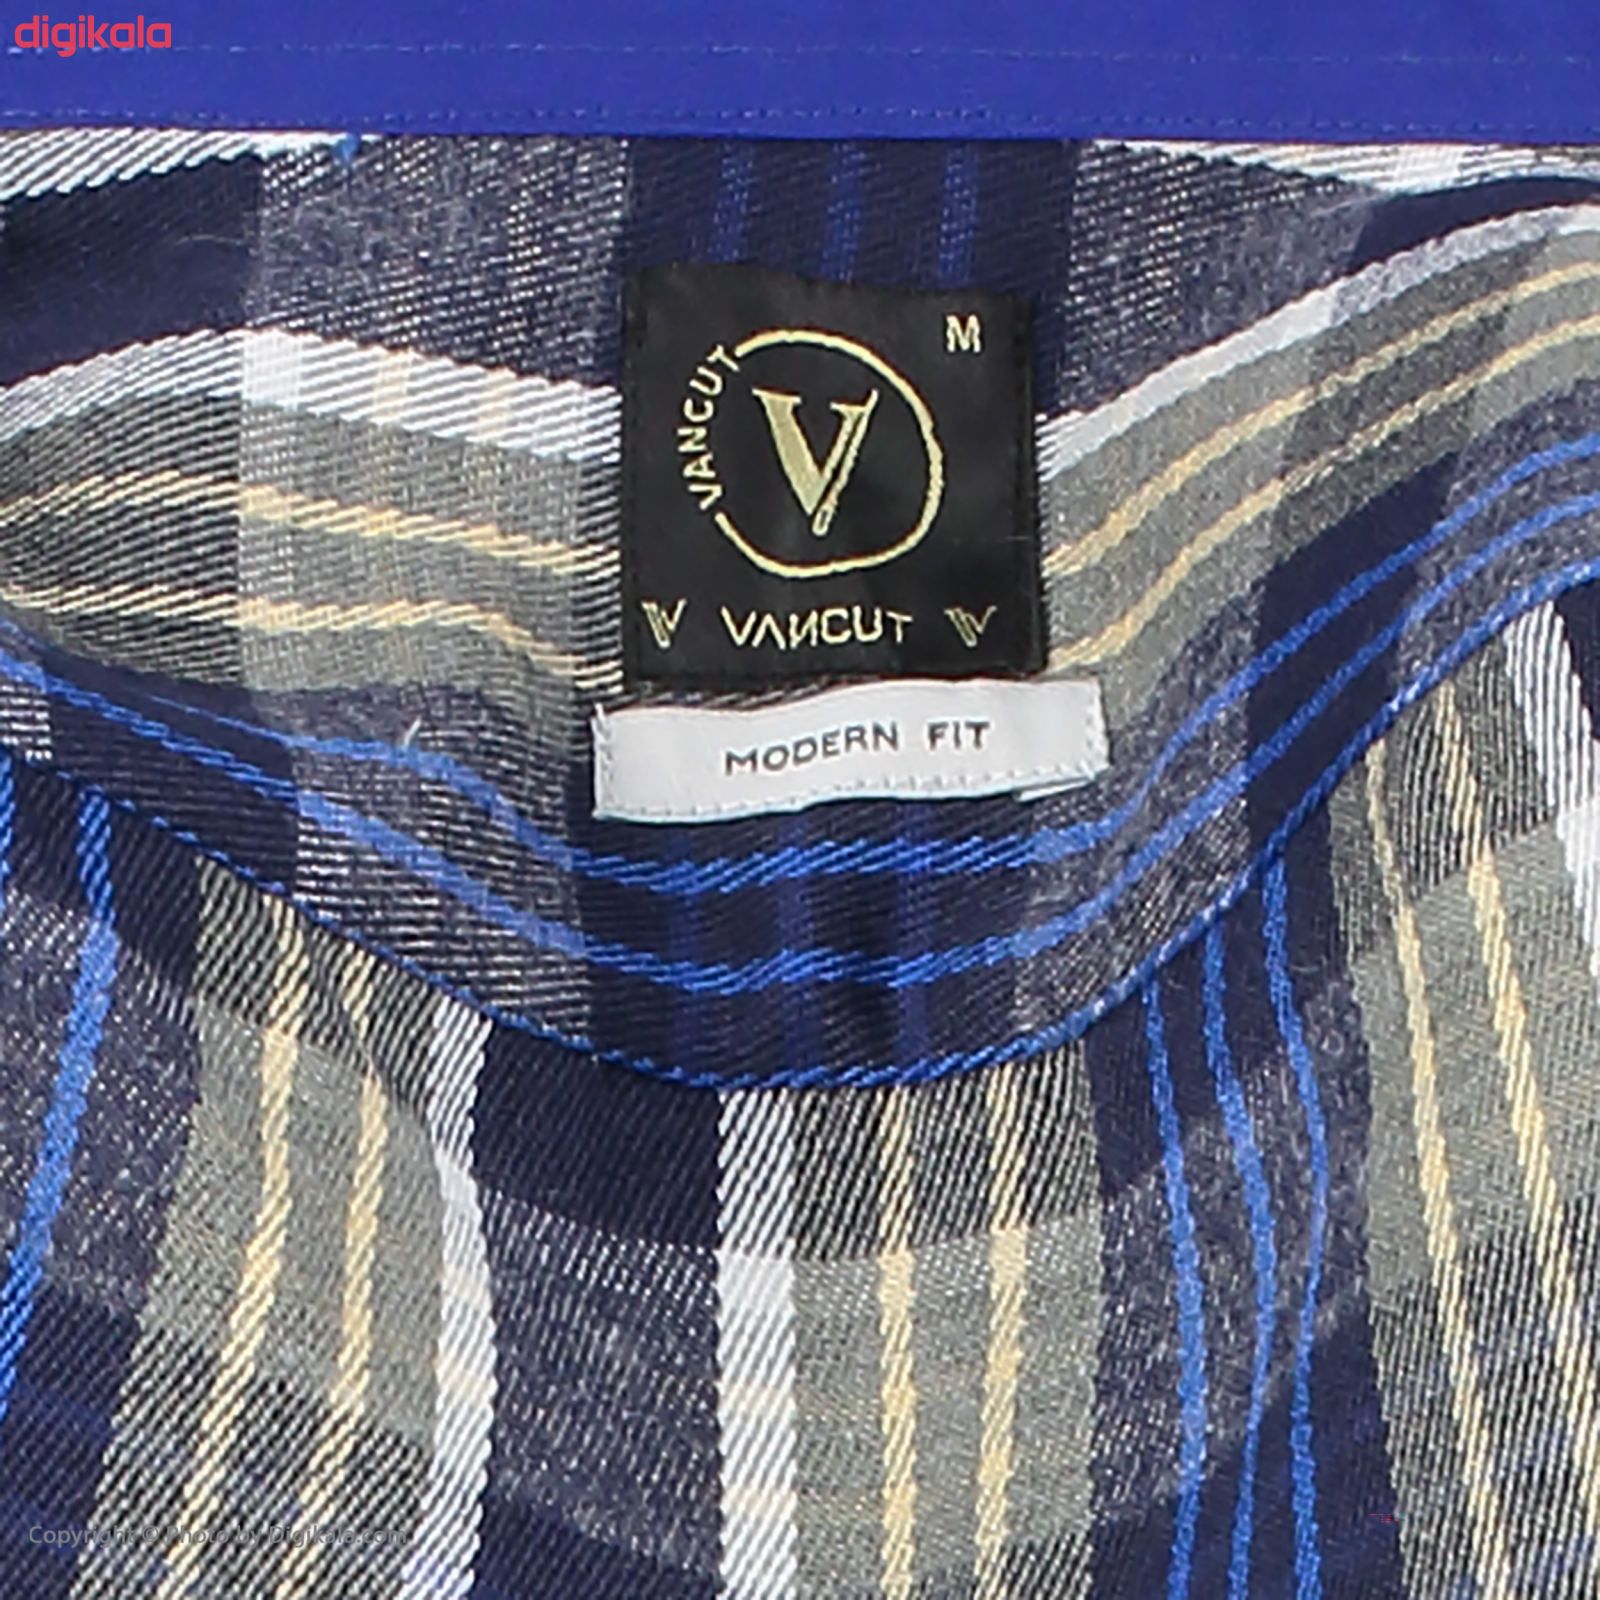 پیراهن آستین بلند مردانه ونکات مدل RVN485207 بسته 2 عددی -  - 5